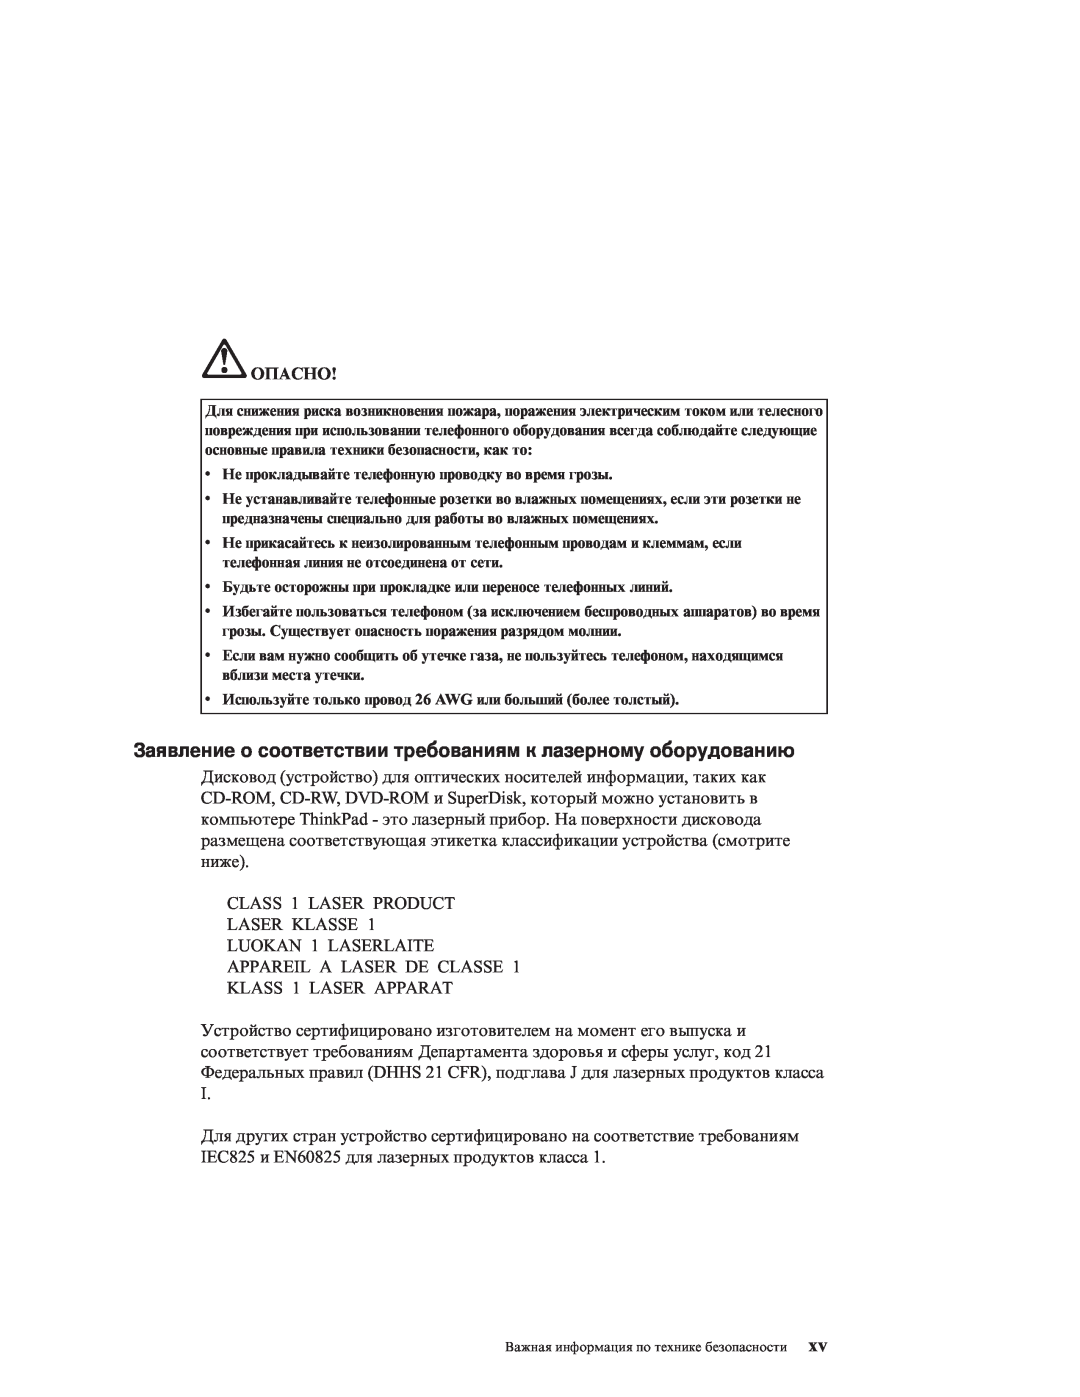 IBM R51E manual Заявление о соответствии требованиям к лазерному оборудованию, Опасно 